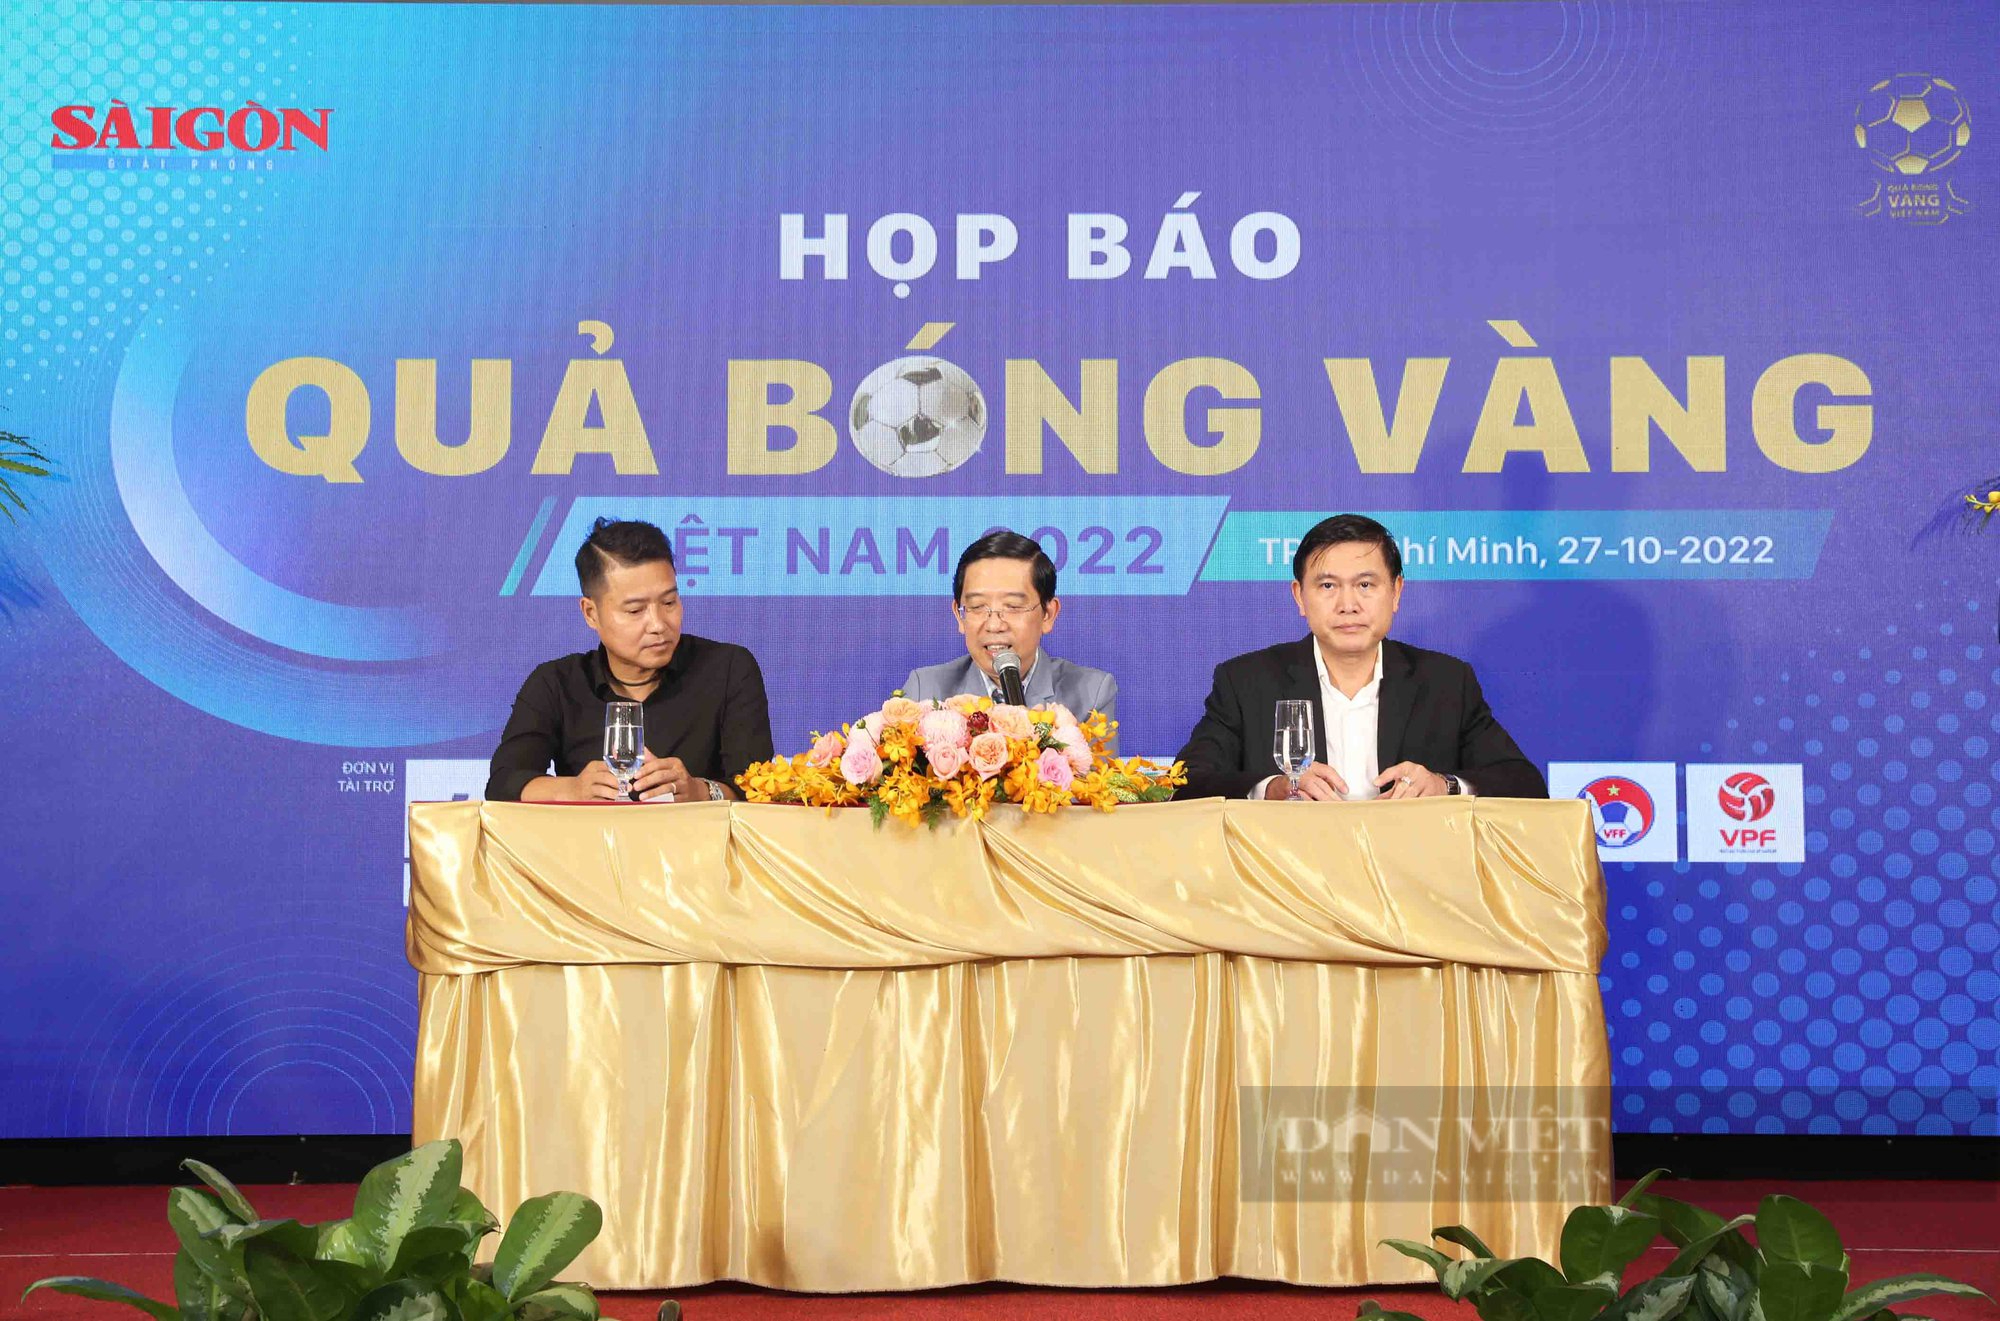 Quả bóng vàng Việt Nam 2022: thêm giải thưởng cho tài năng trẻ - Ảnh 1.